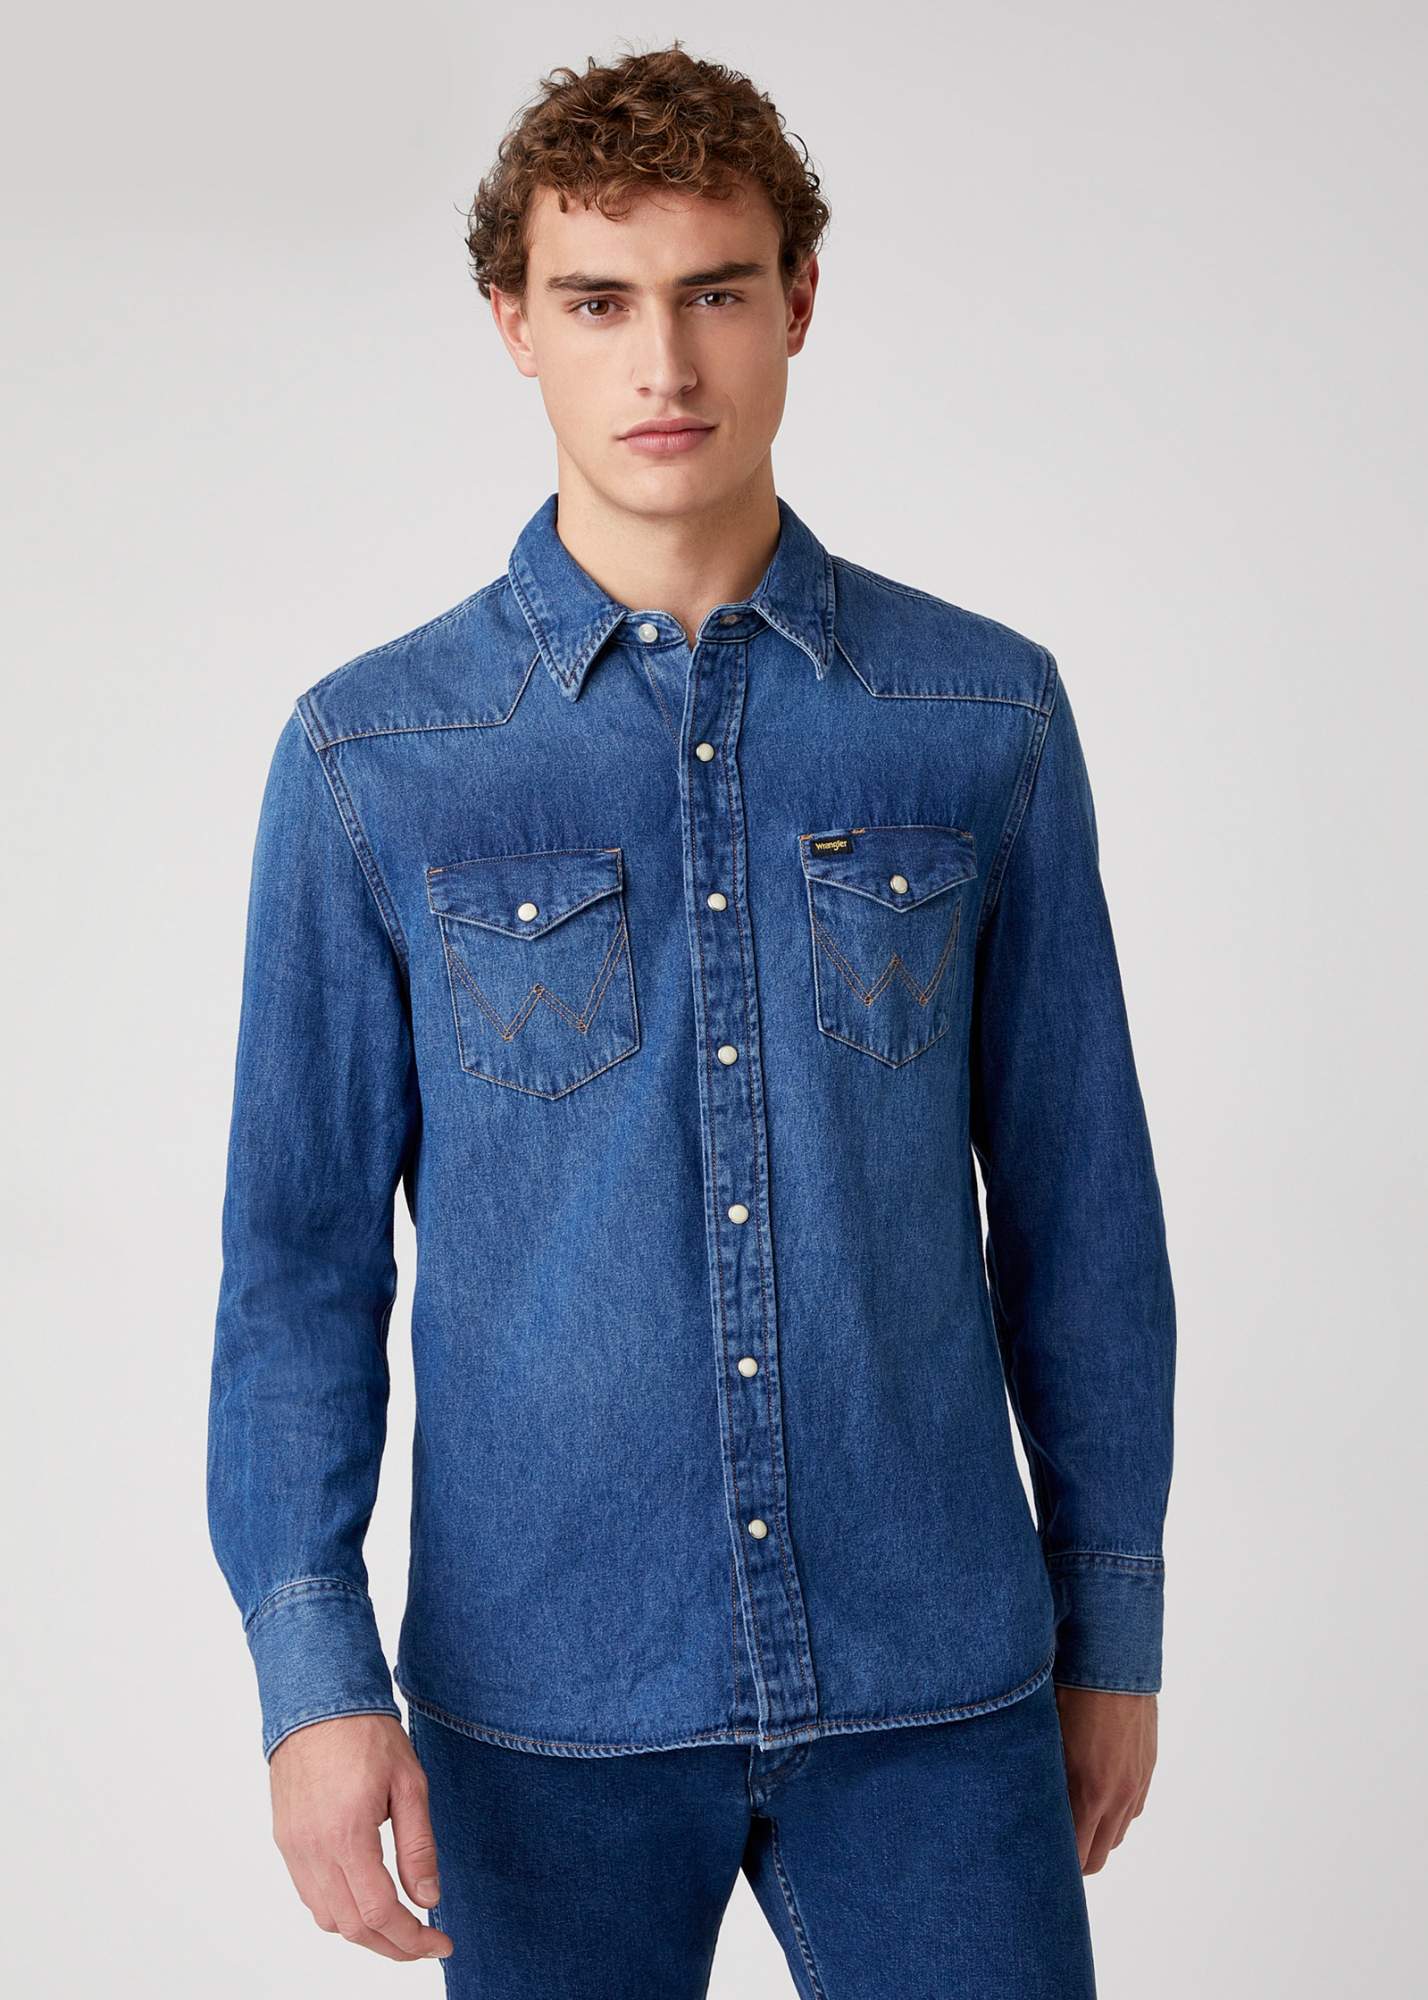 Джинсовая рубашка мужская Wrangler W5MSLW924 синяя L